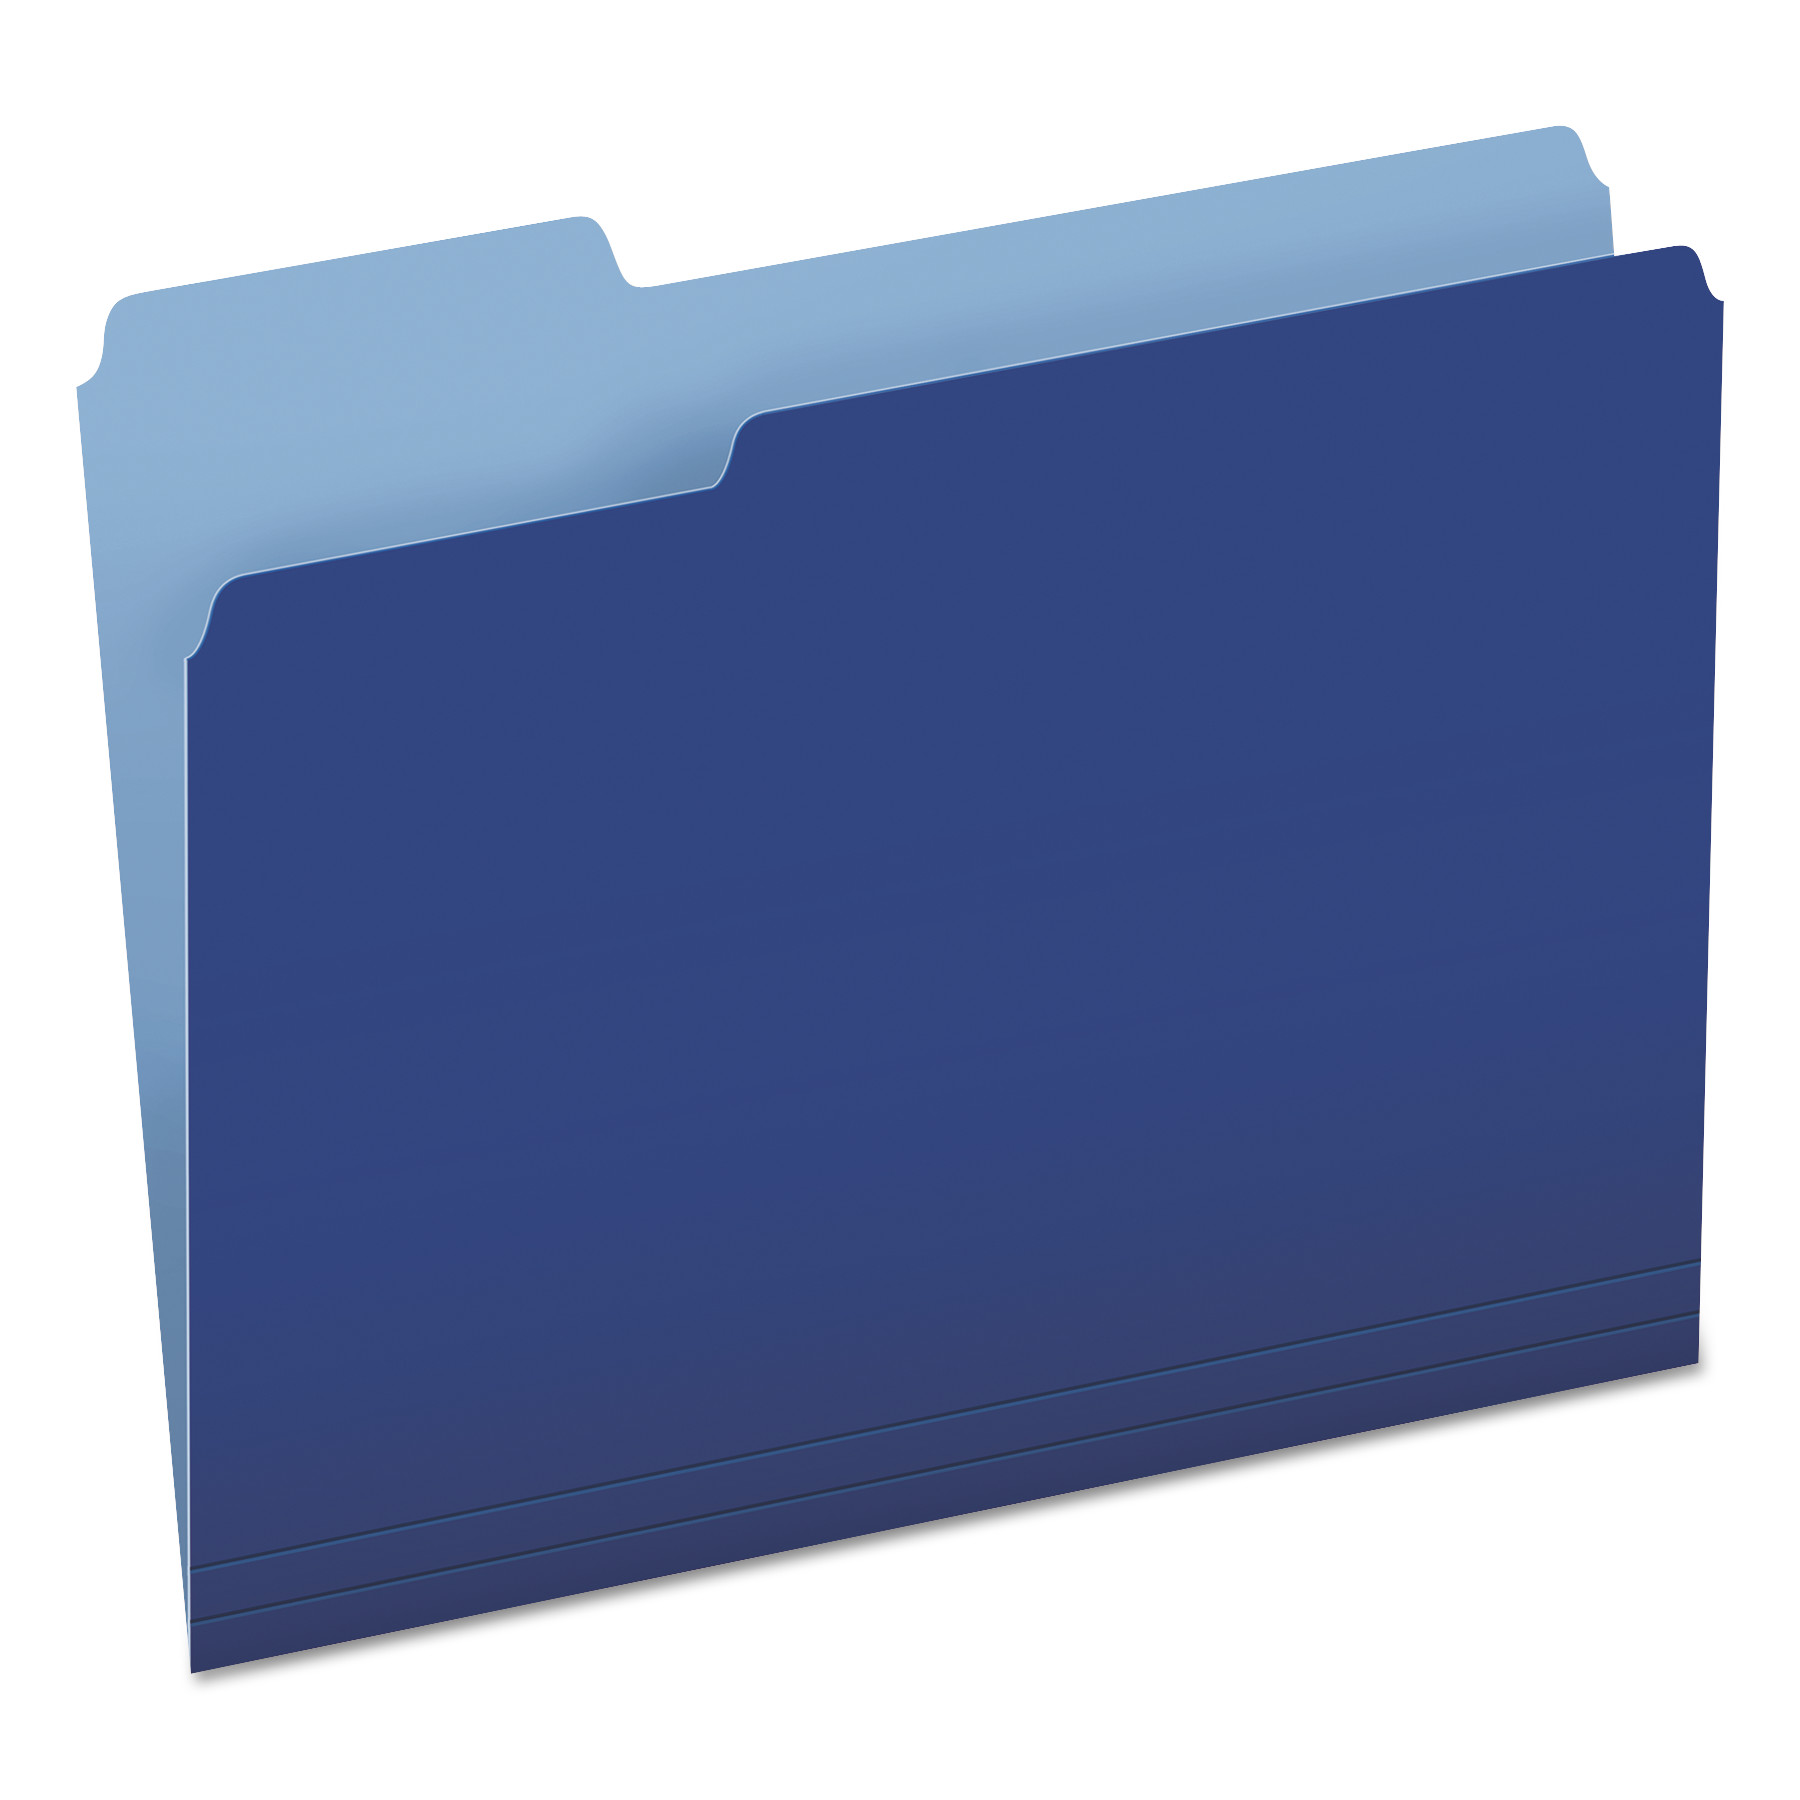  Pendaflex 152 1/3 NAV Colored File Folders, 1/3-Cut Tabs, Letter Size, Navy Blue/Light Blue, 100/Box (PFX15213NAV) 